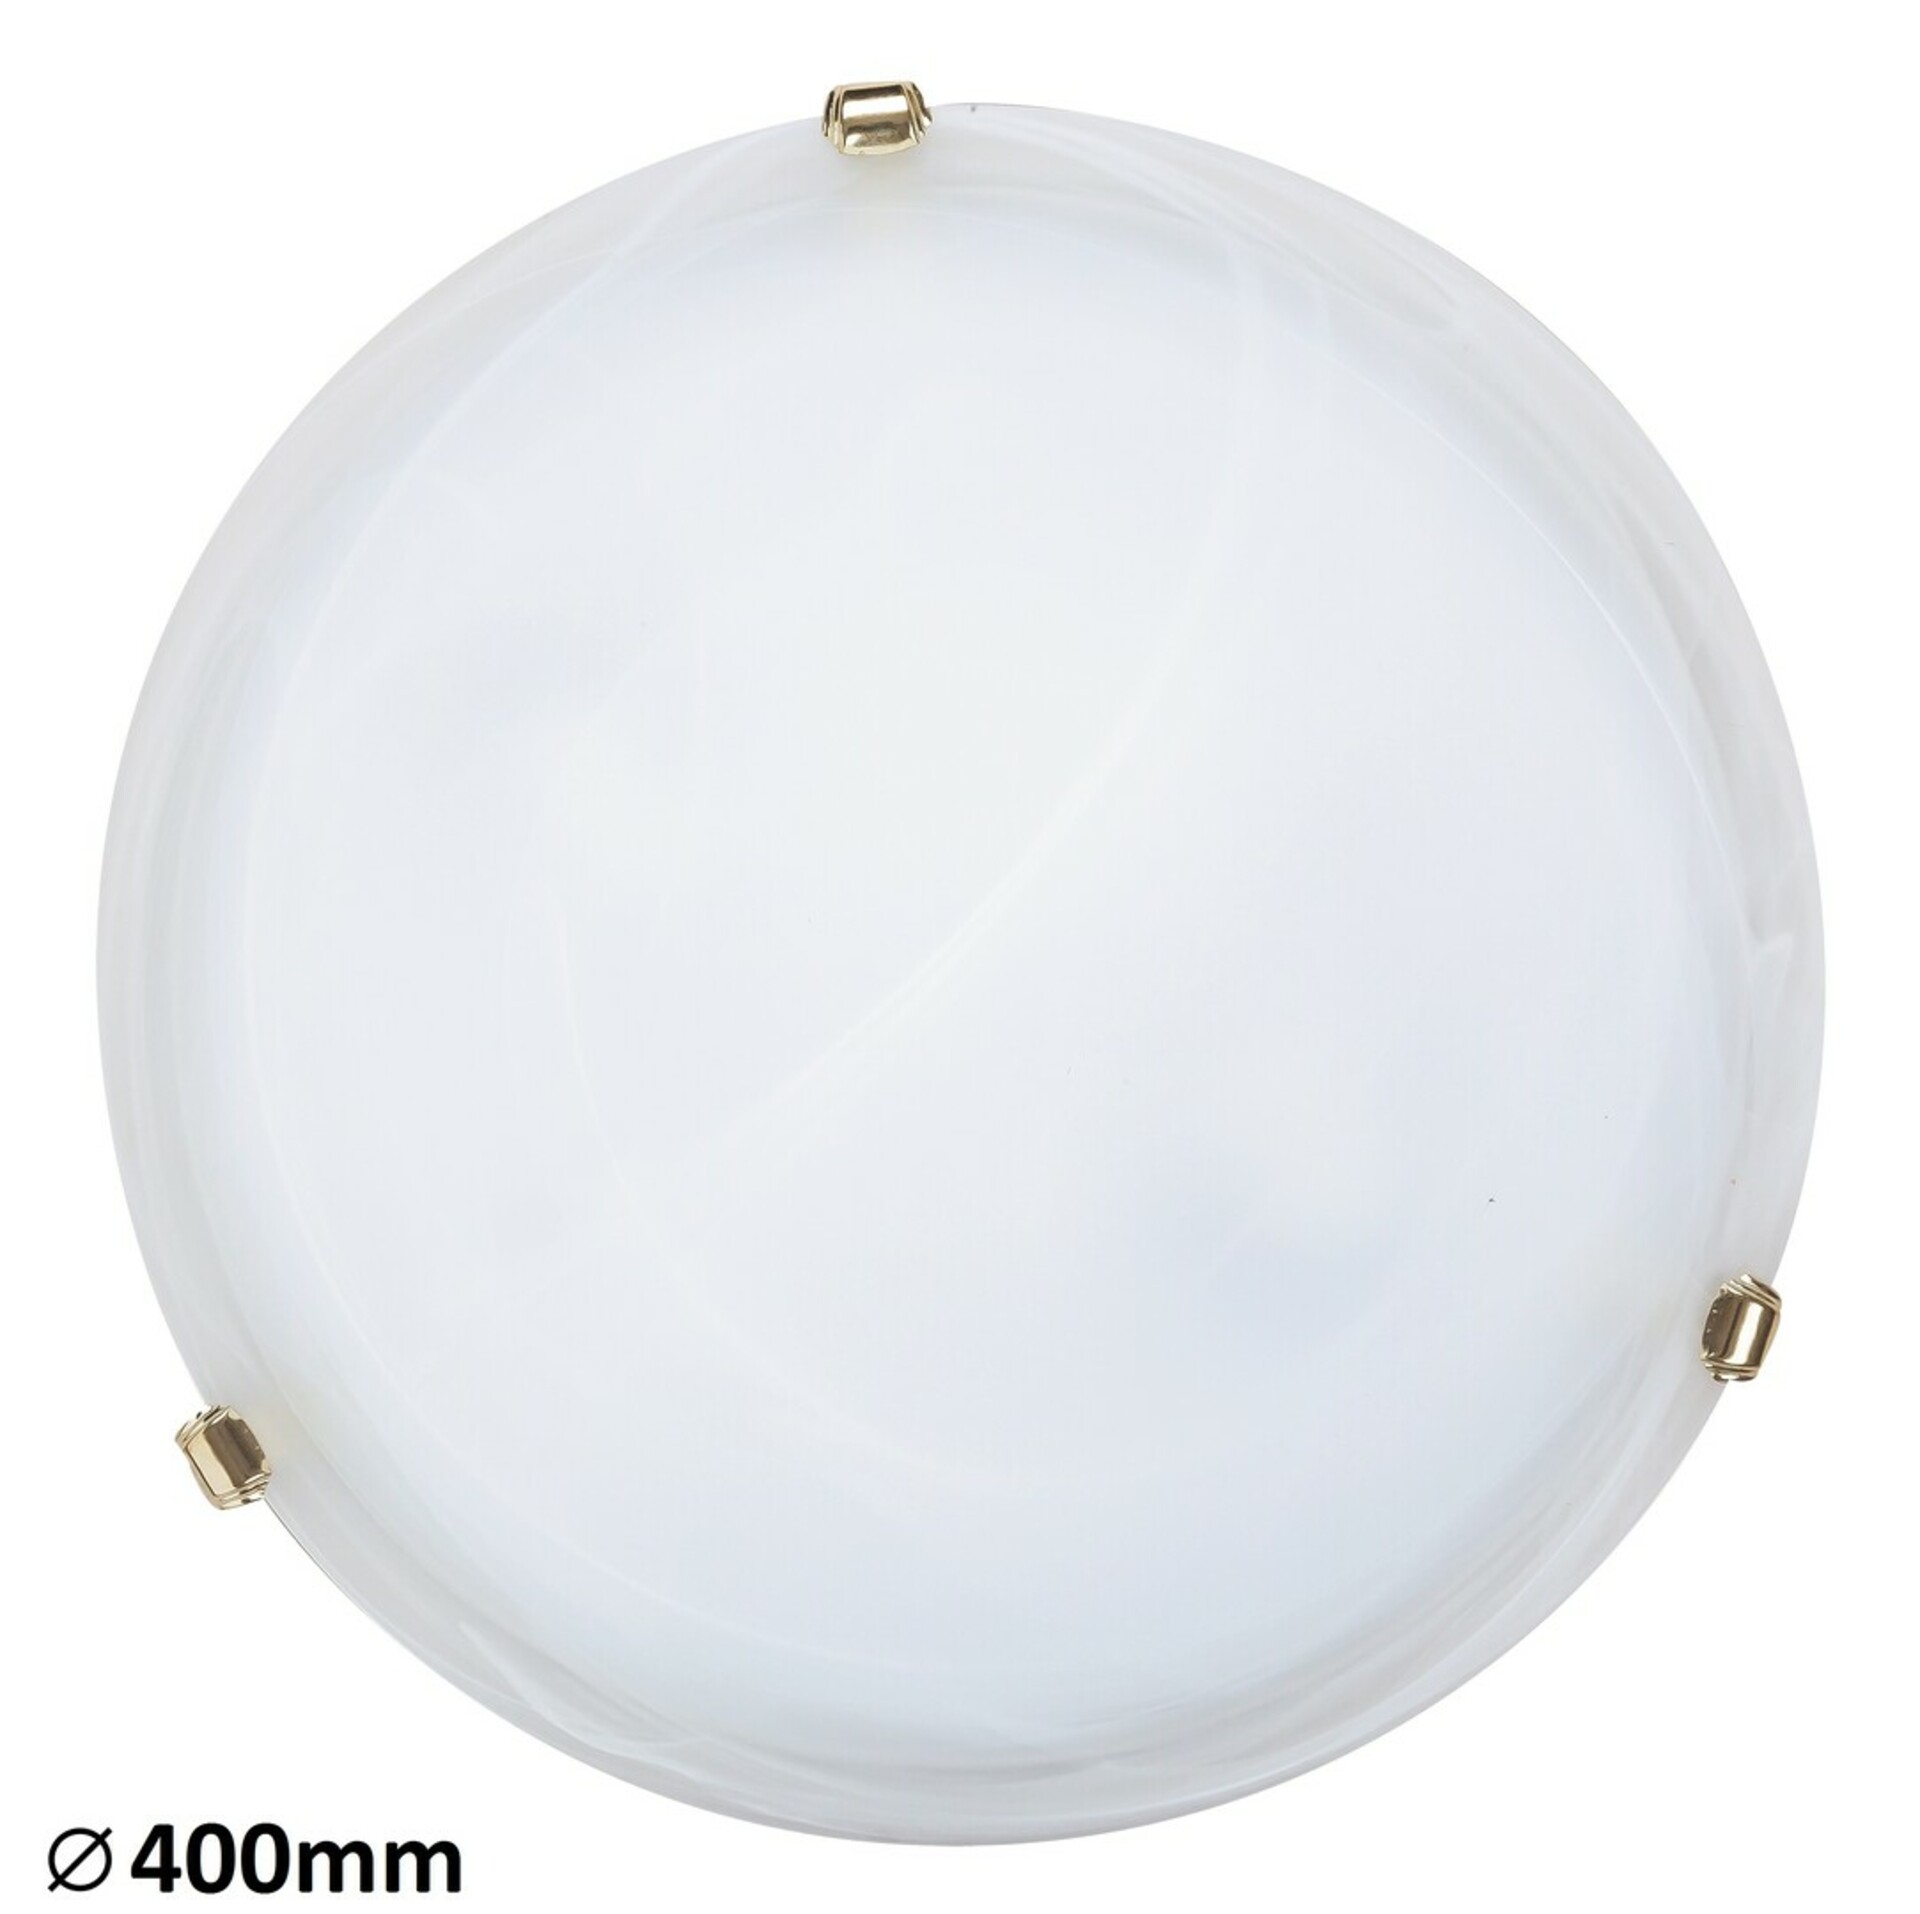 Rabalux stropní svítidlo Alabastro E27 2x MAX 60W bílé alabastrové sklo 3301